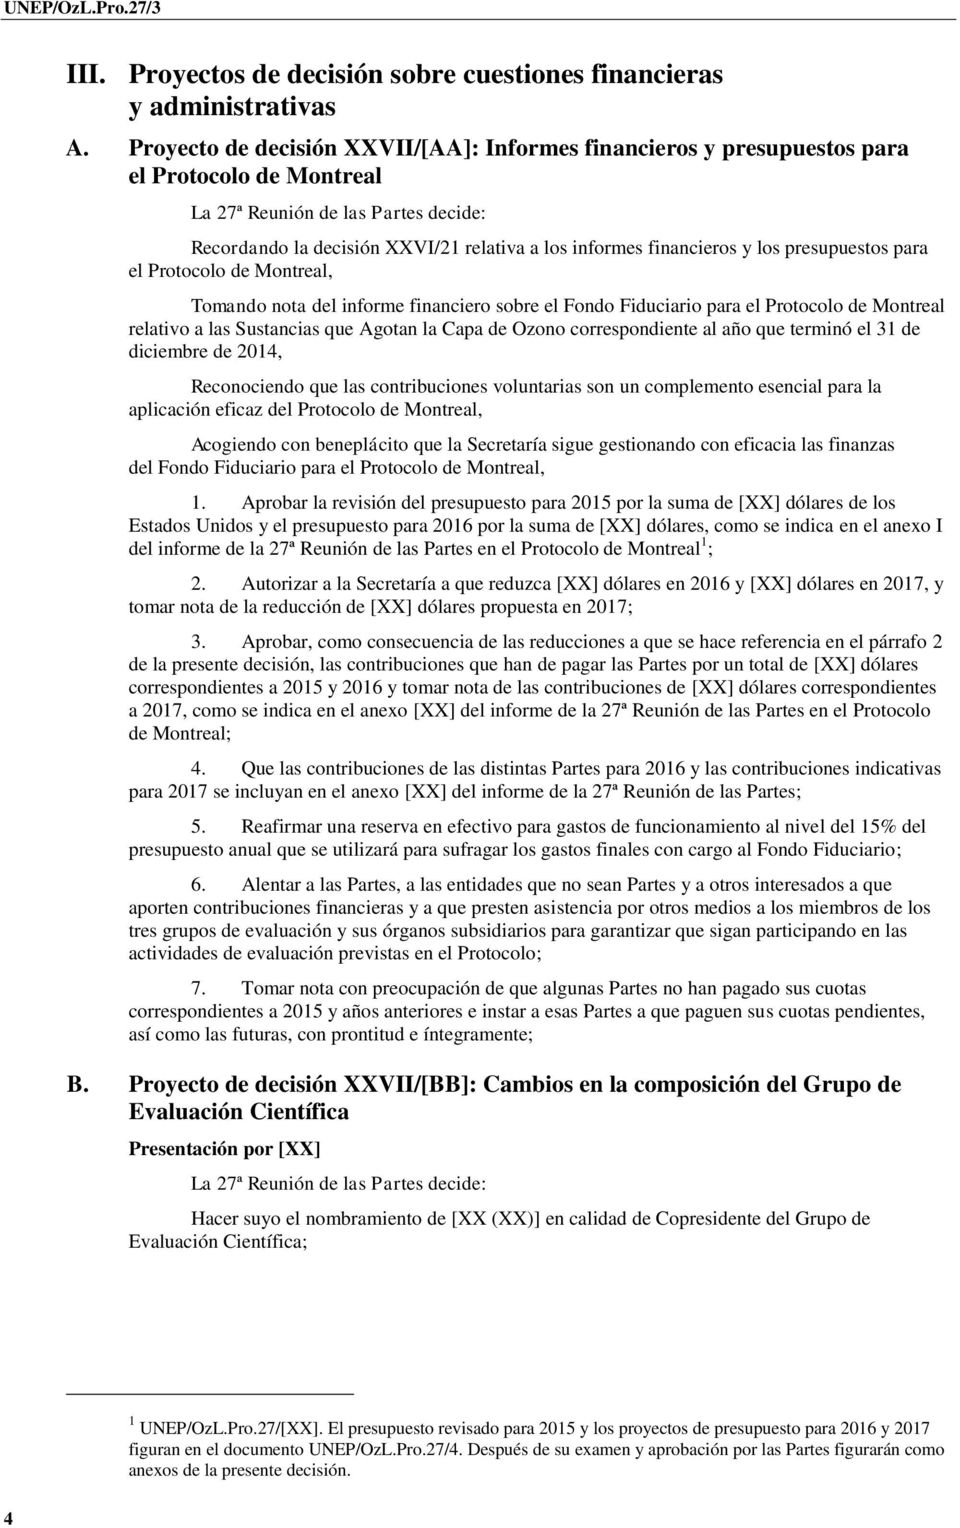 Protocolo de Montreal, Tomando nota del informe financiero sobre el Fondo Fiduciario para el Protocolo de Montreal relativo a las Sustancias que Agotan la Capa de Ozono correspondiente al año que